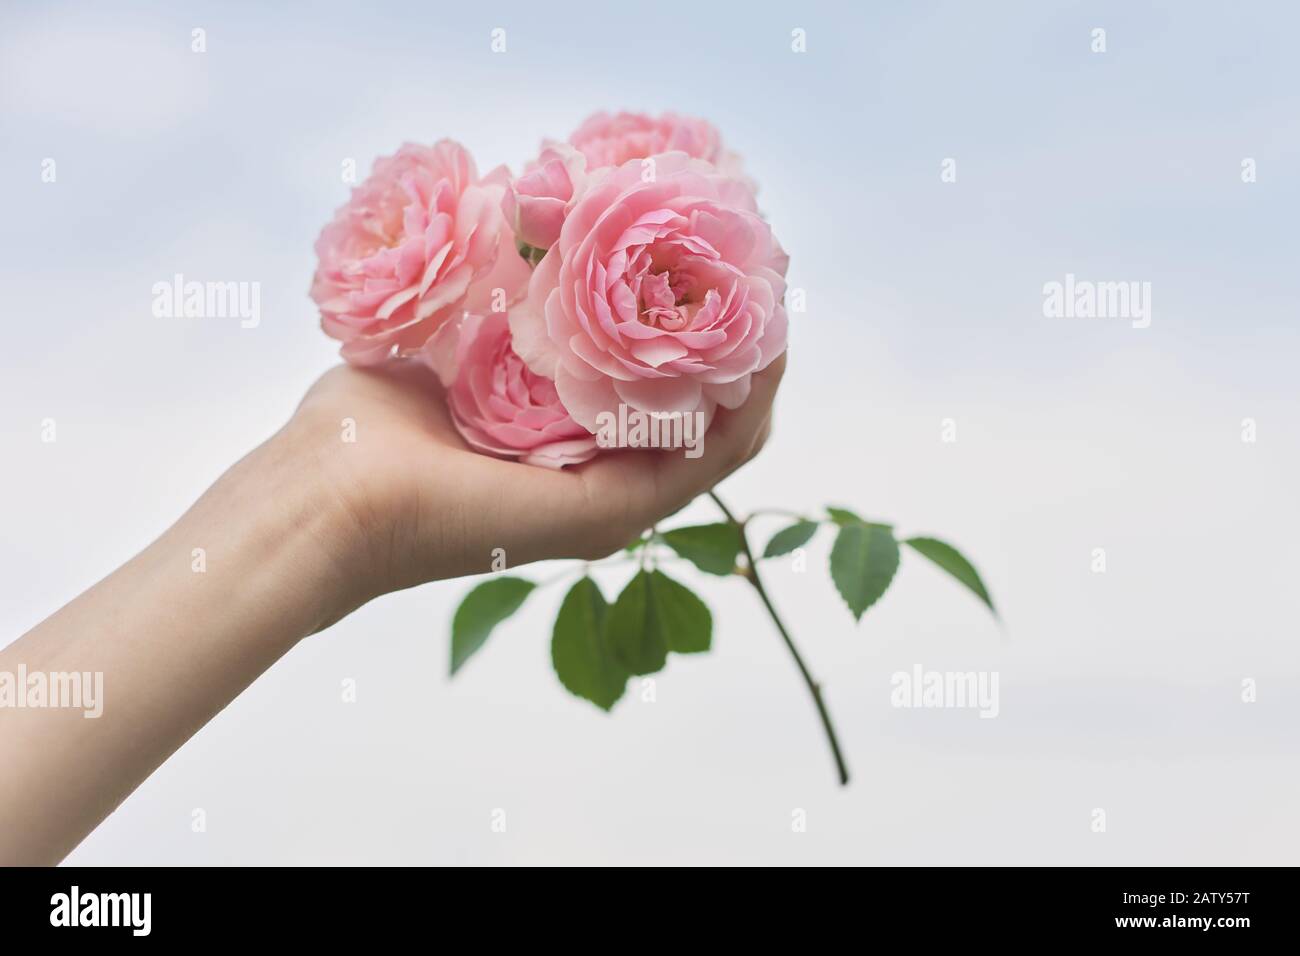 Hãy cùng ngắm nhìn hoa hồng xinh tươi trong bức ảnh đầy lãng mạn này. Màu hồng tinh tế của nó sẽ khiến bạn đắm chìm trong cảm giác tình yêu và sự ngọt ngào. Hãy nhấn play để khám phá thêm vẻ đẹp của nó.